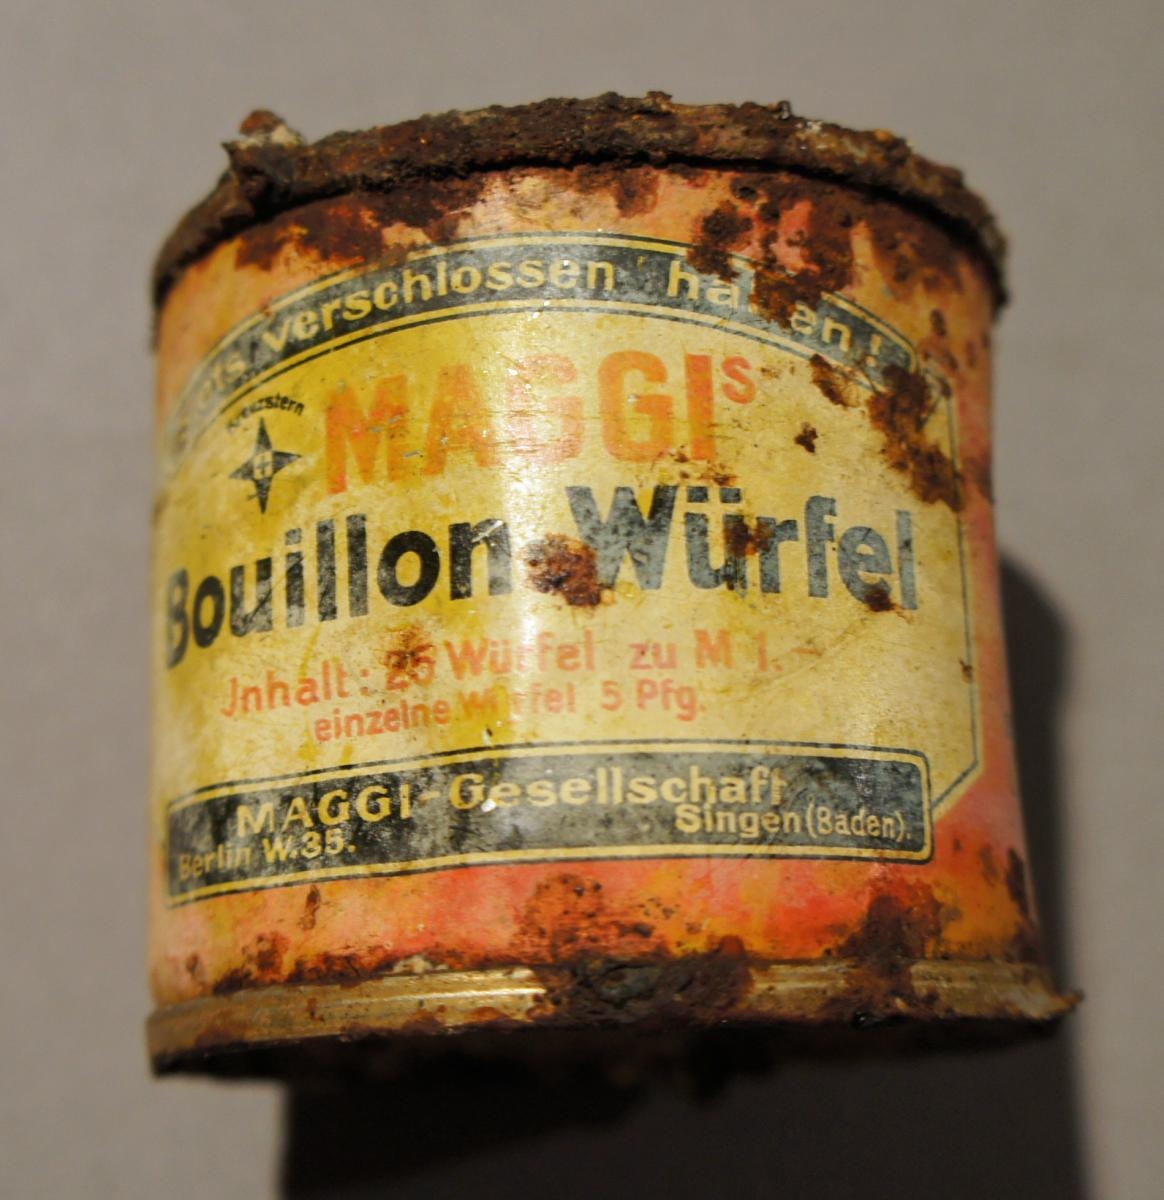 Boites de conserve allemandes contenant du bouillon de marque Maggi - Cl. Yves Desfossés. Ministère de la Culture et de la Communication